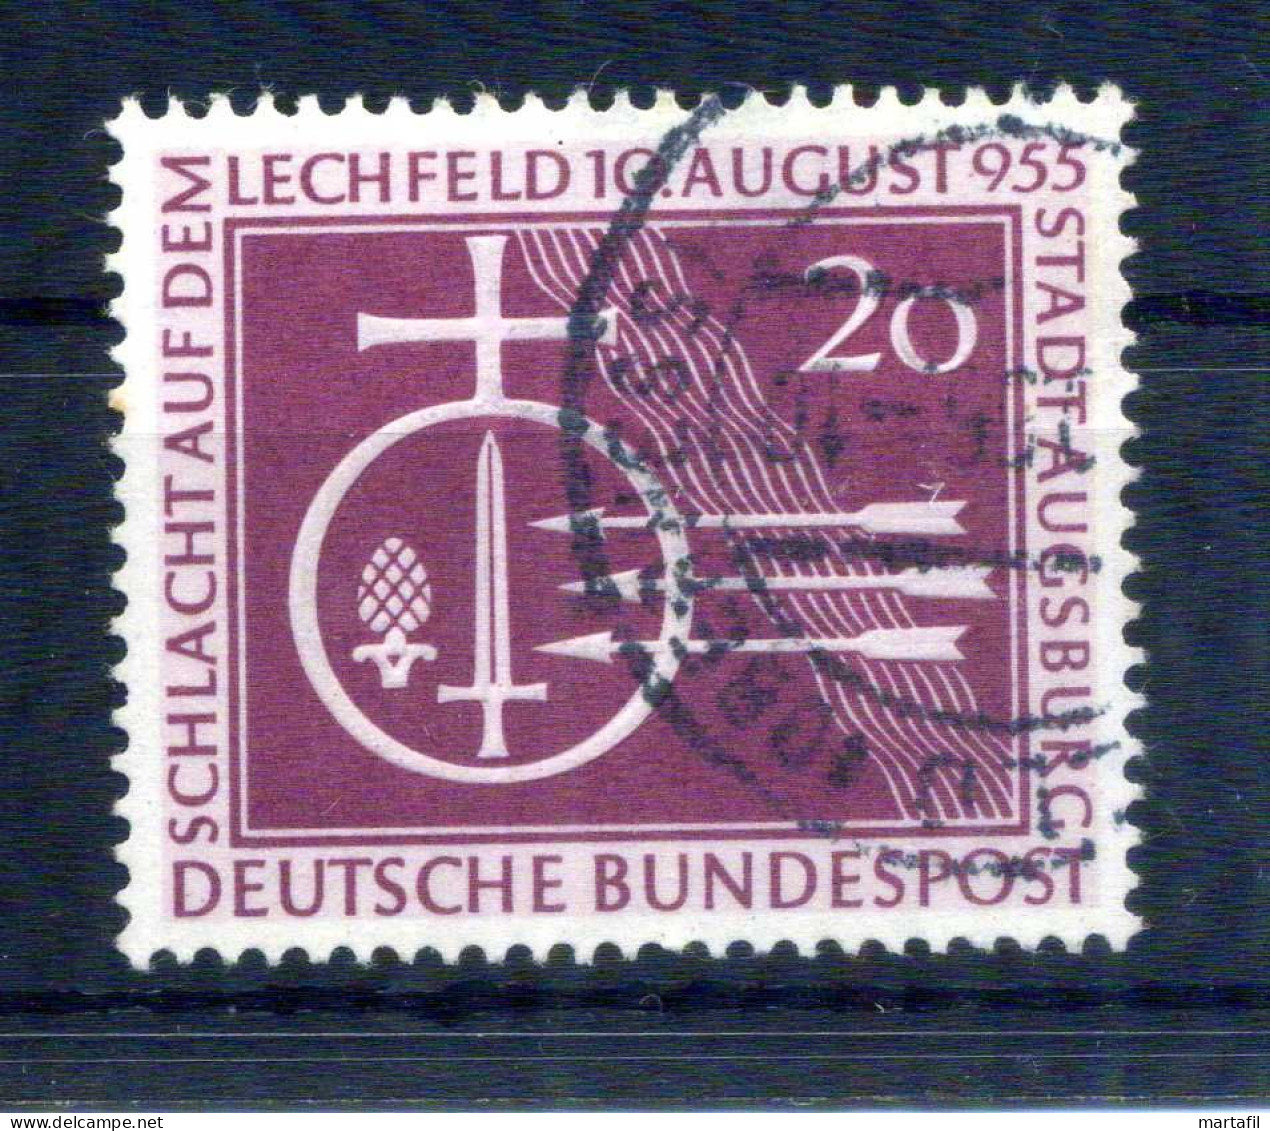 1955 Germania Repubblica Federale Tedesca RFT SET USATO - Usati